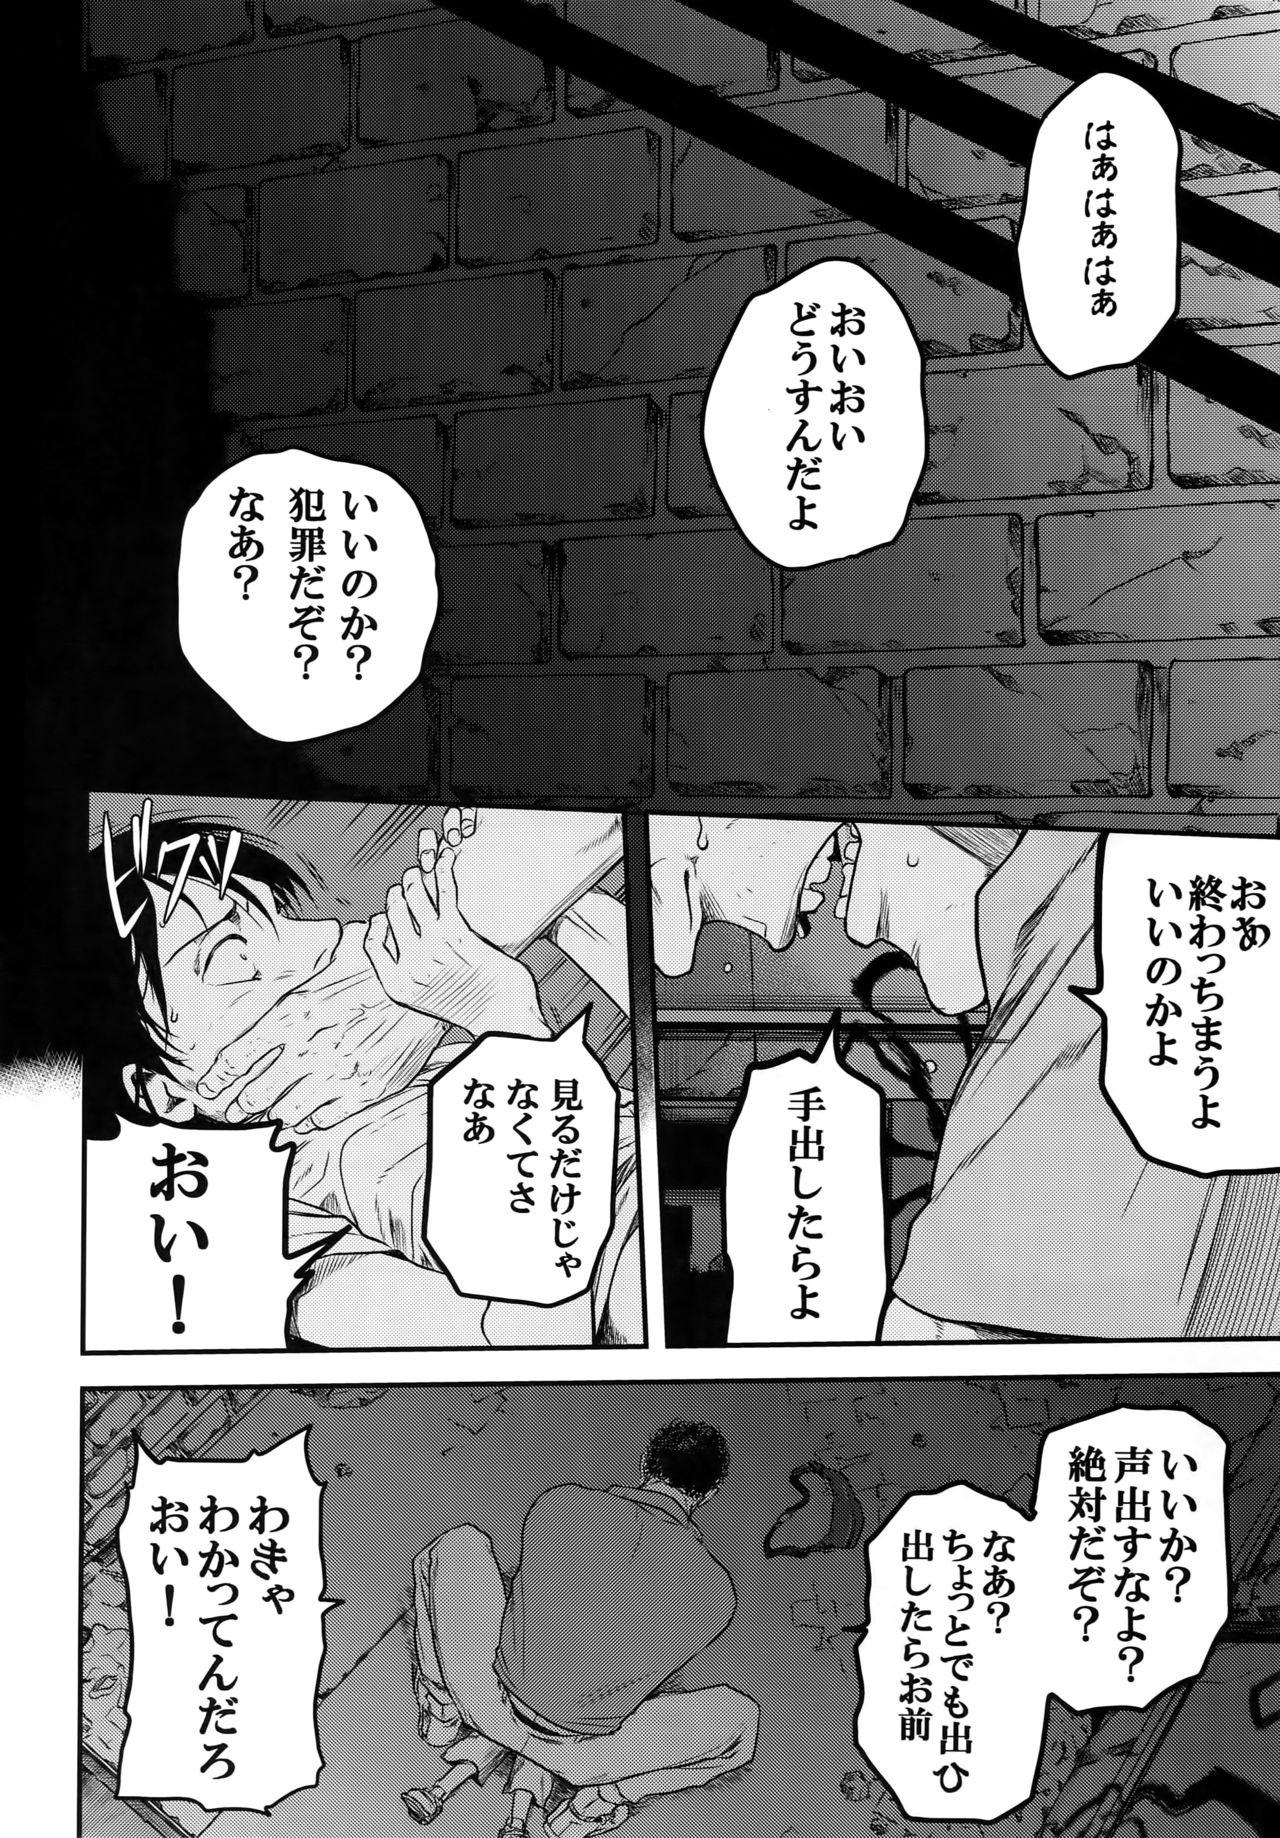 Exgirlfriend Nisemono Hero - Shingeki no kyojin Mouth - Page 3